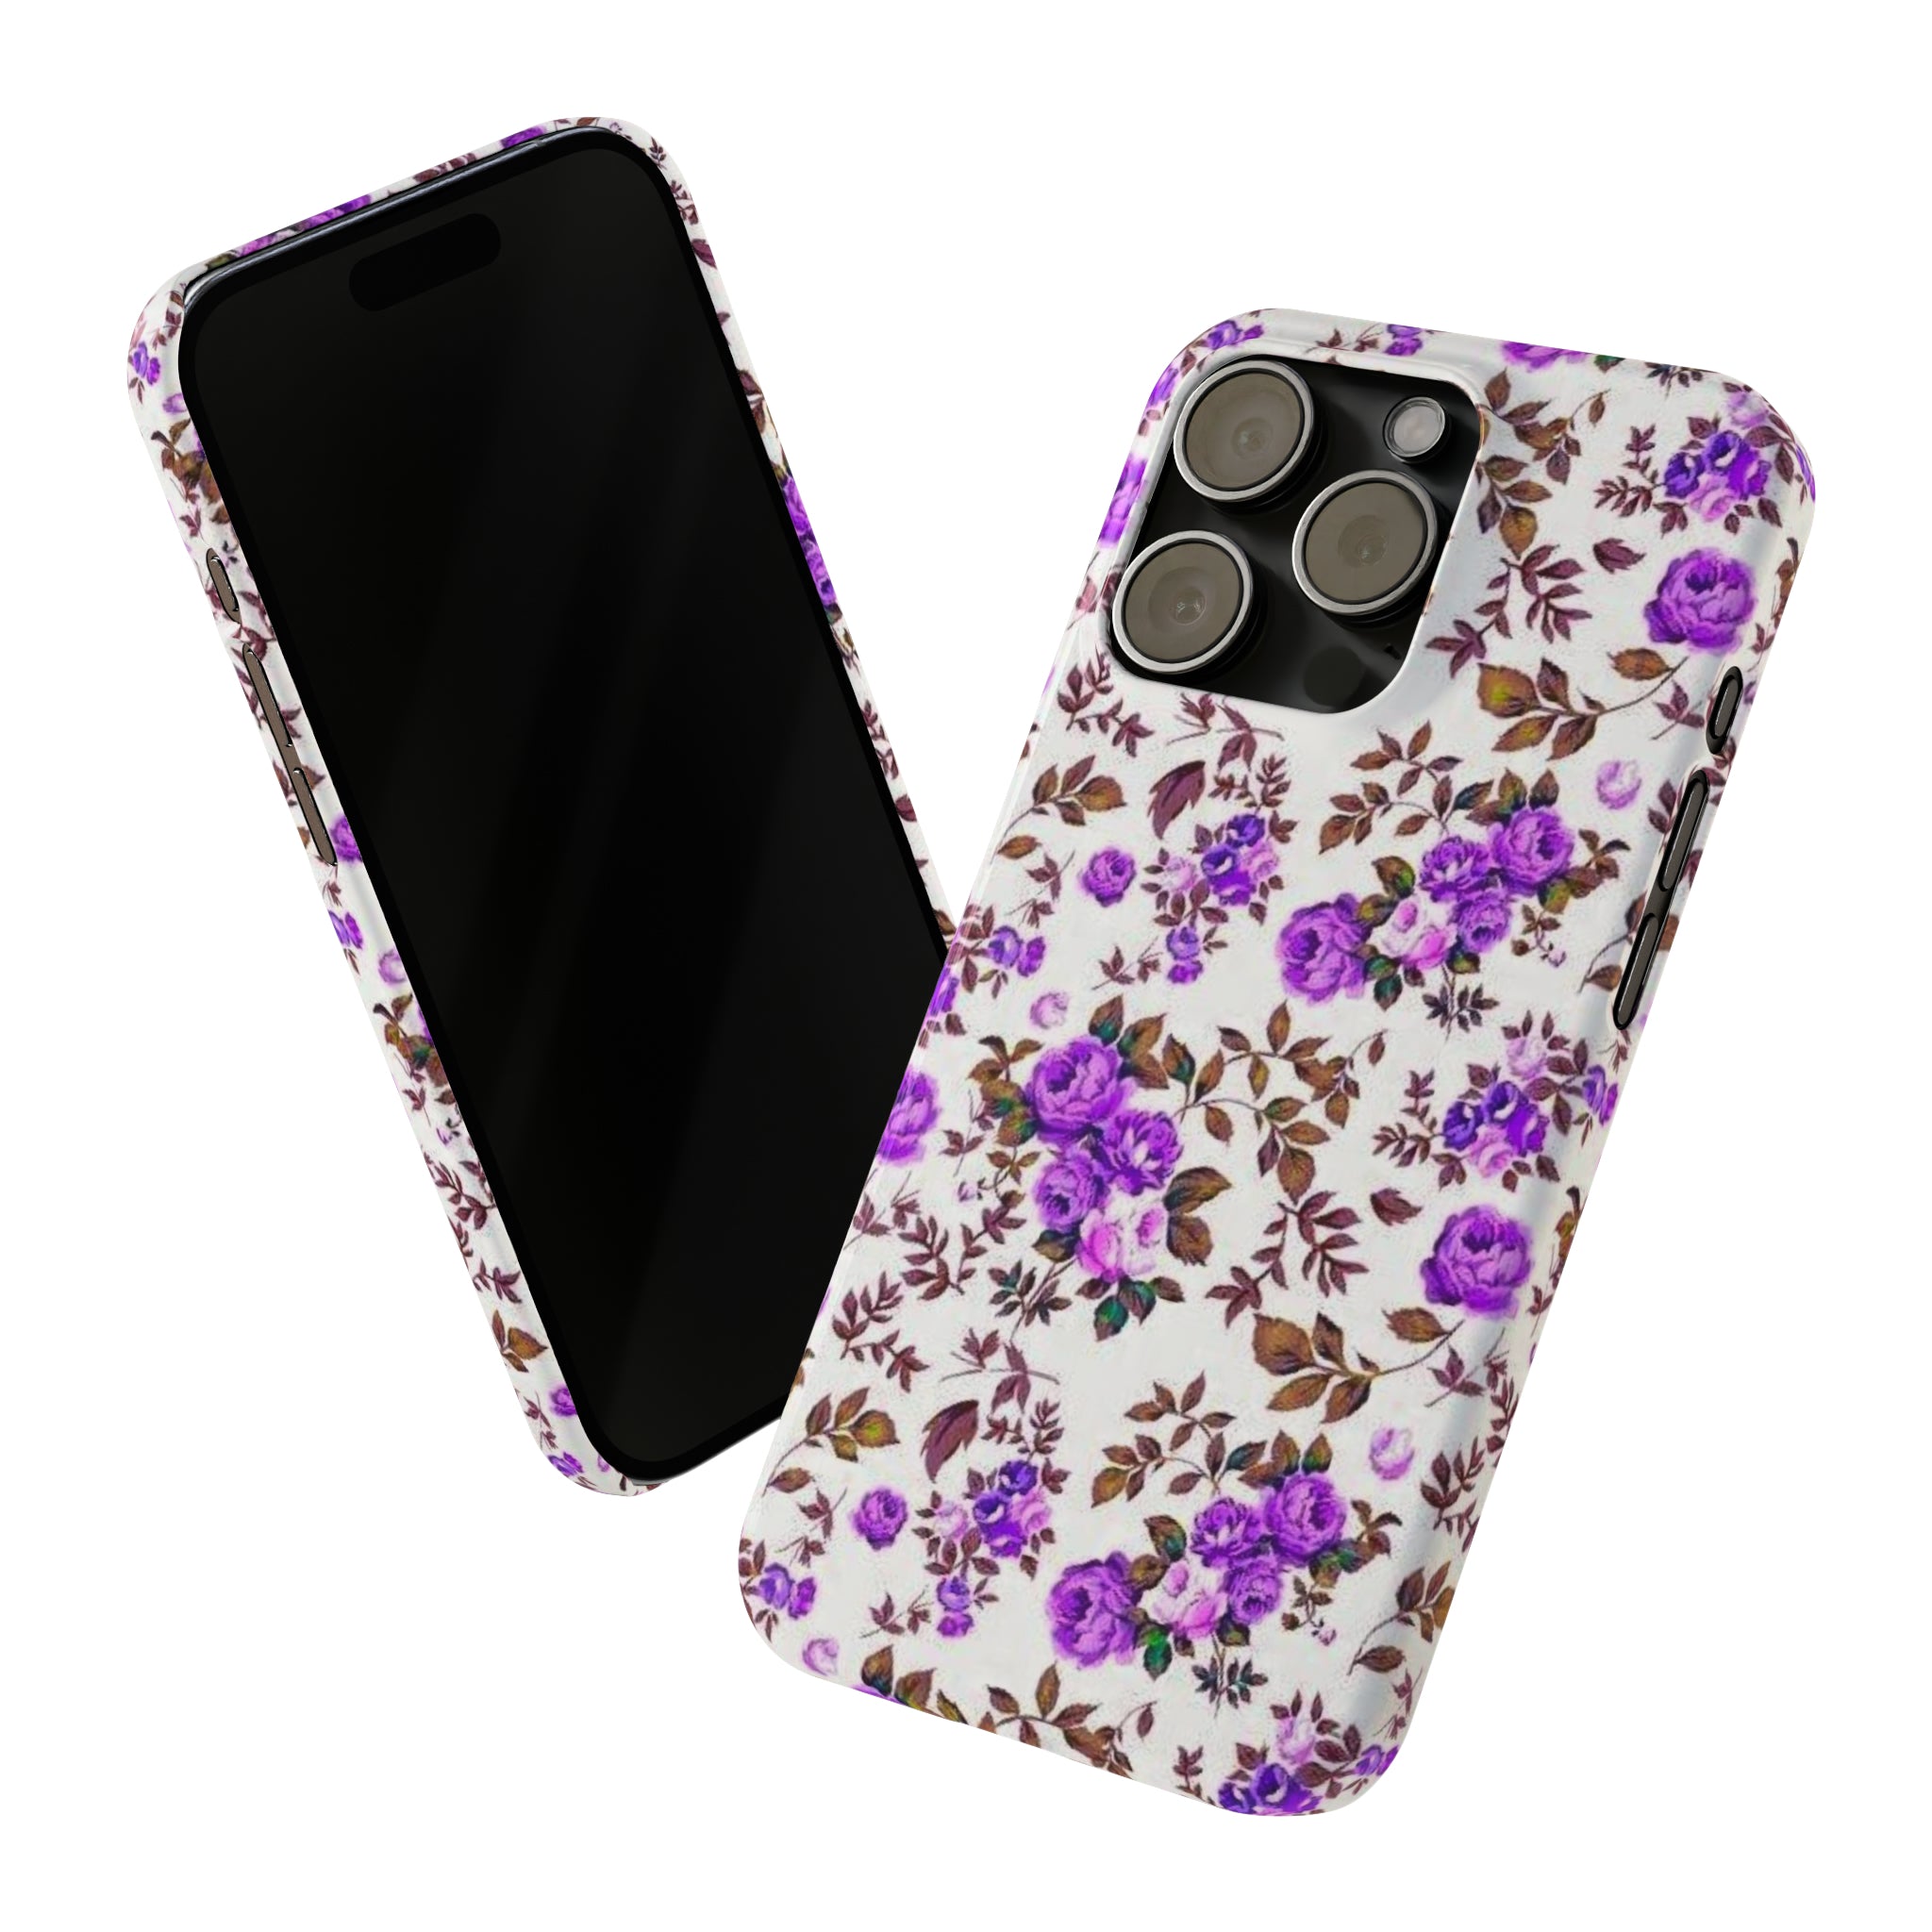 Purple Garden case